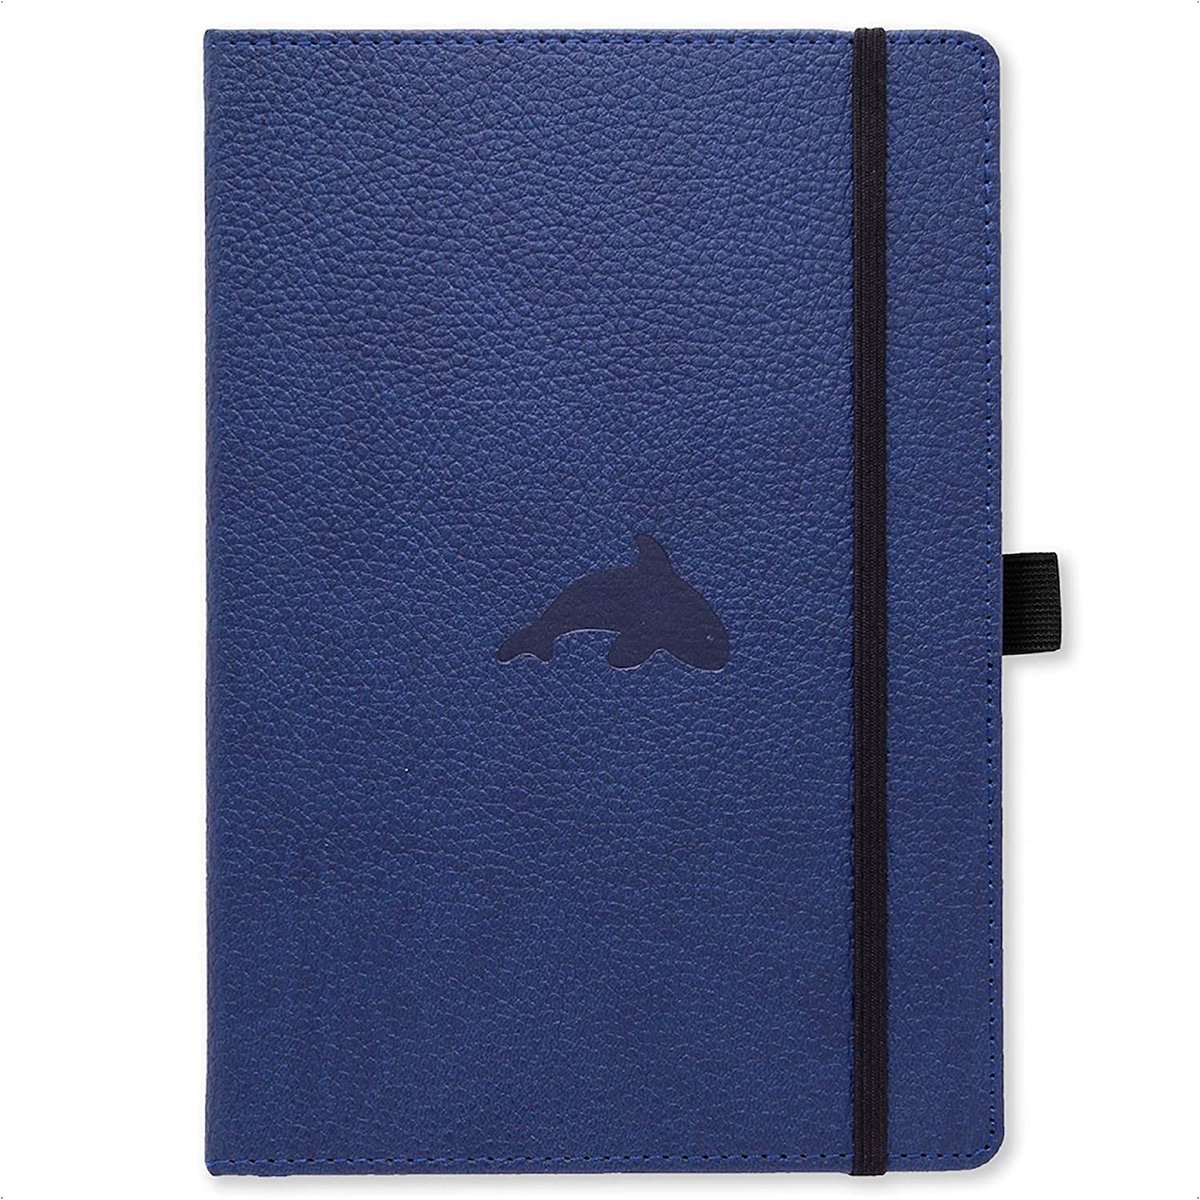 Dingbats* Wildlife A4 Notitieboek - Blue Whale Blanco - Bullet Journal met 100 gsm Inktvrij Papier - Schetsboek met Harde Kaft, Elastische Sluiting en Bladwijzer